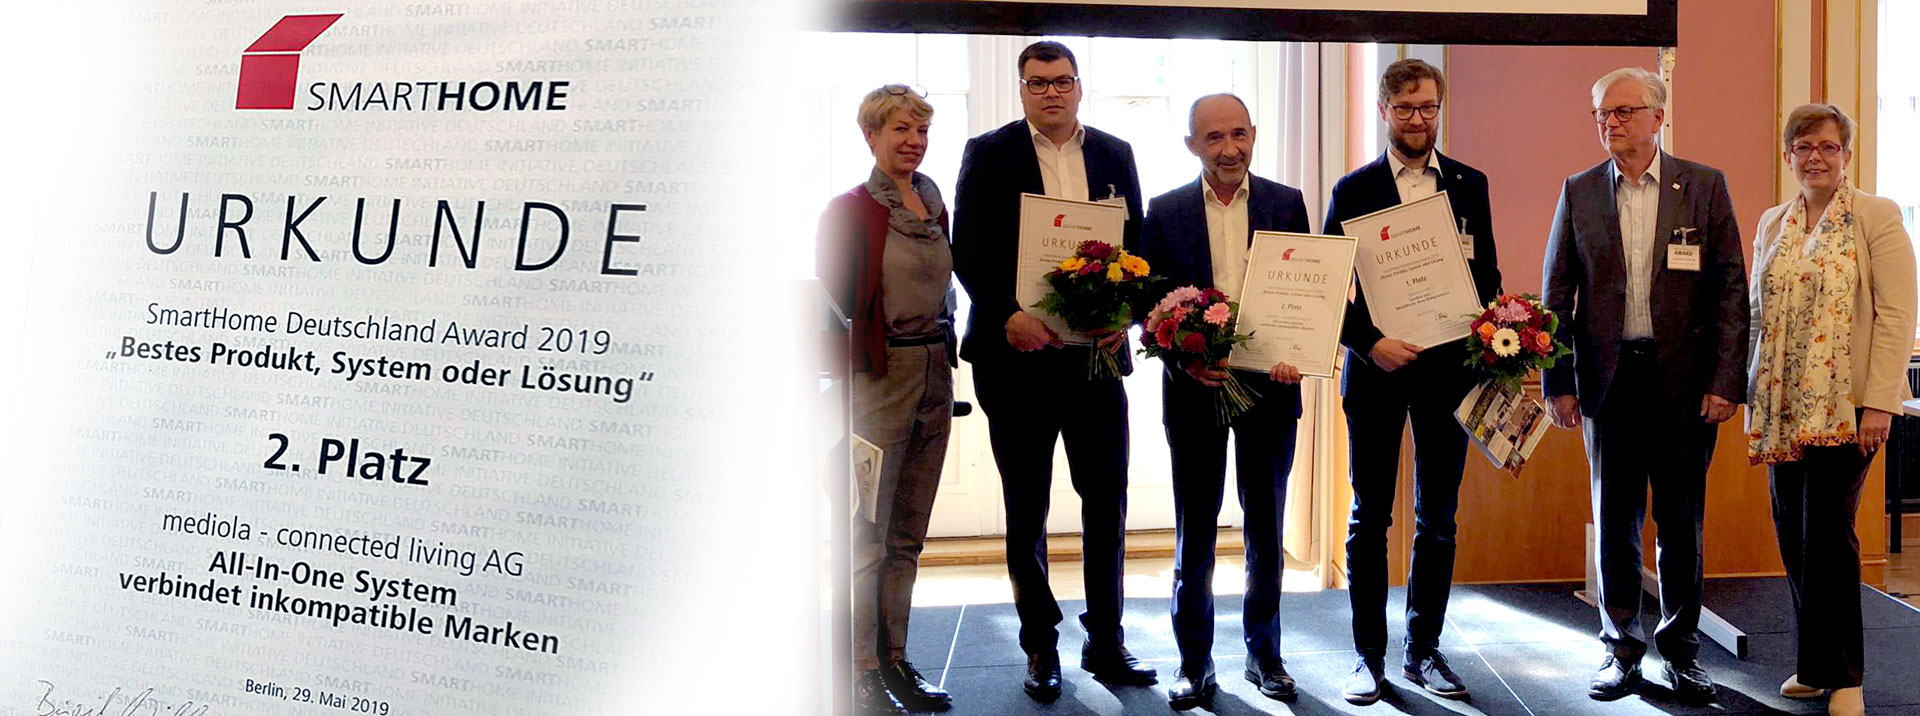 smarthome award deutschland 2019 mediola